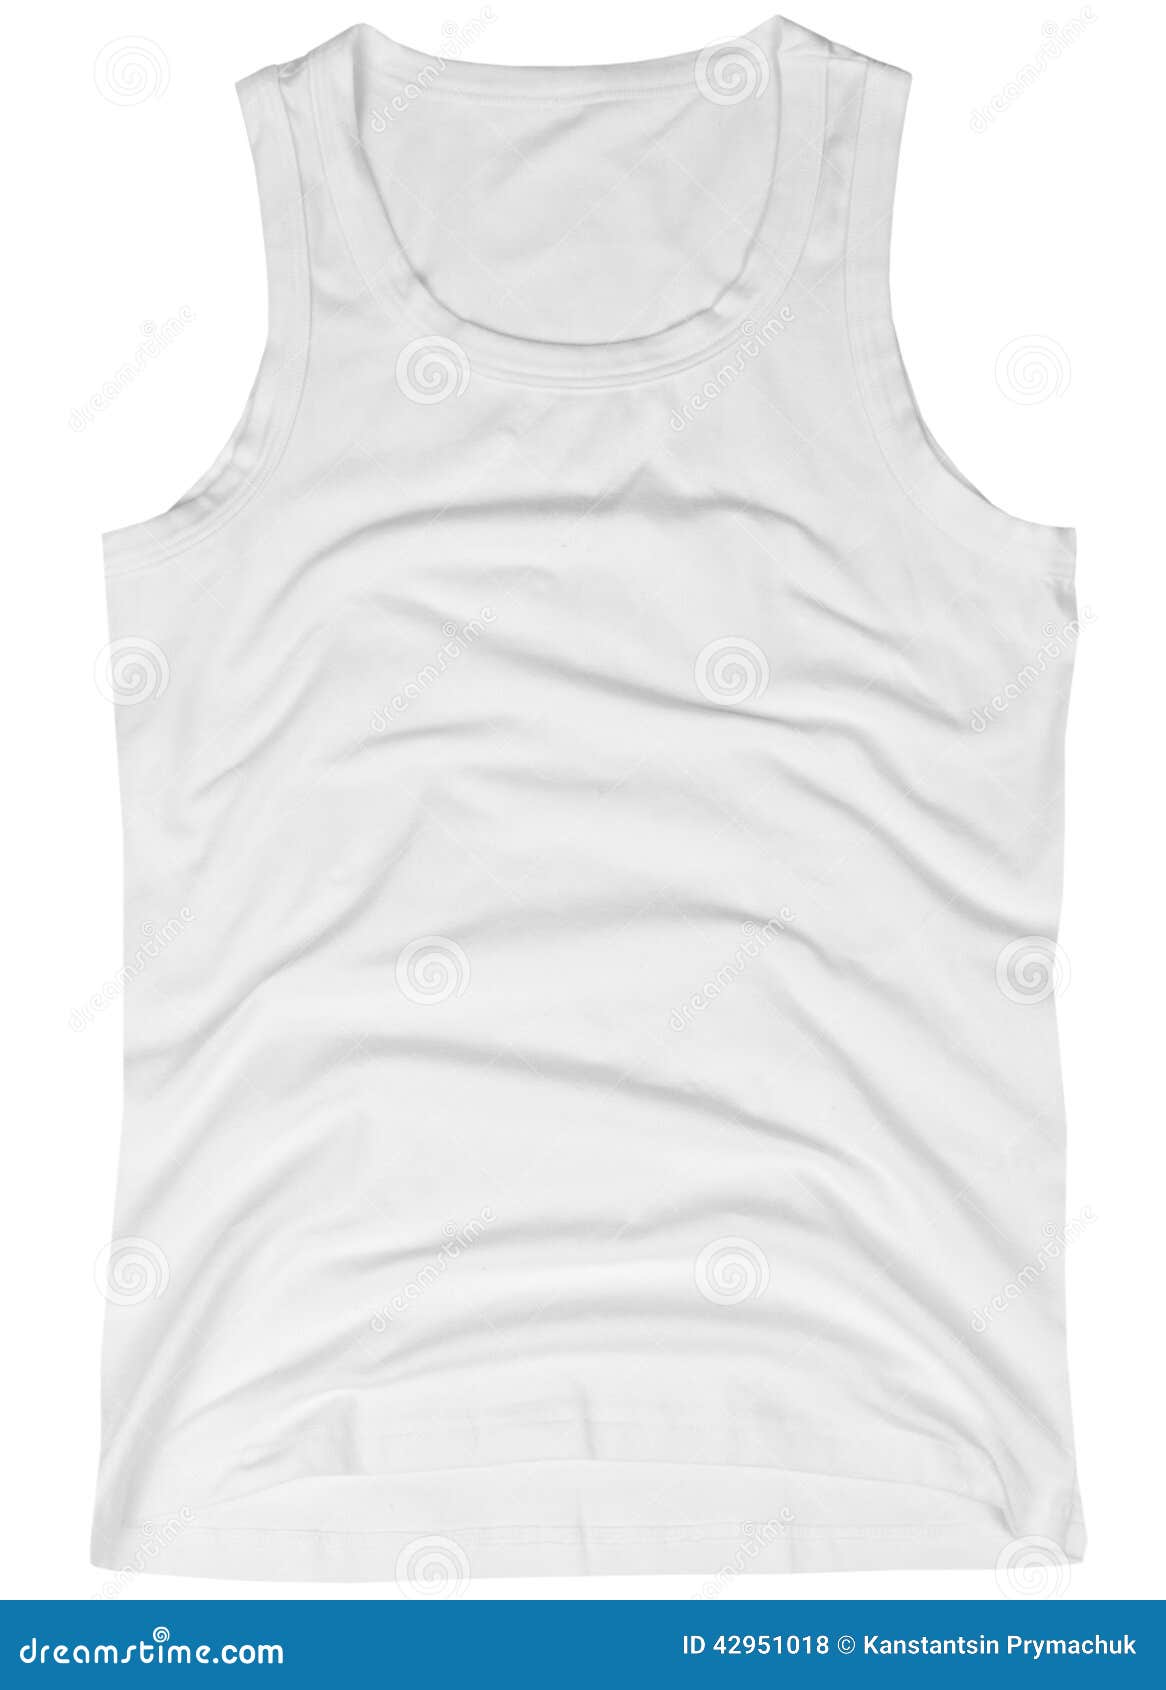 Sleeveless Unisex Shirt Isolated on White Stock Photo - Image of cotton ...